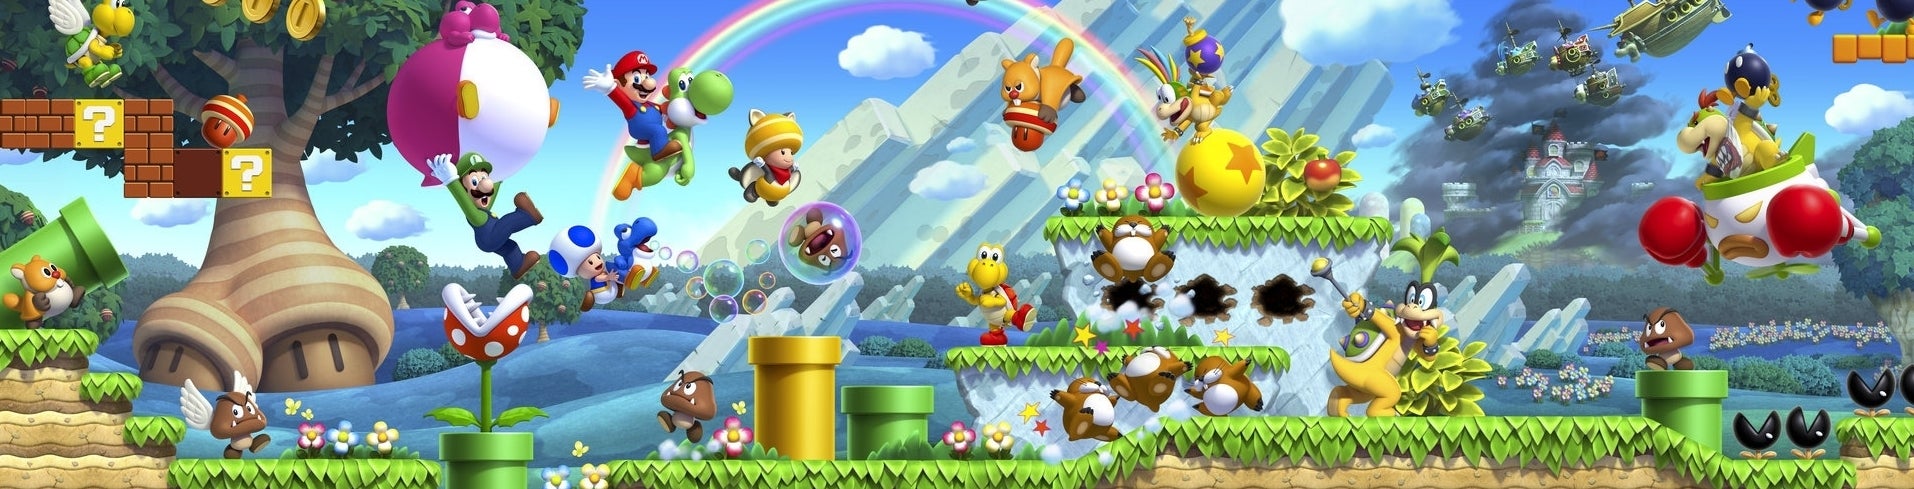 Imagem para New Super Mario Bros. U - um novo mundo?